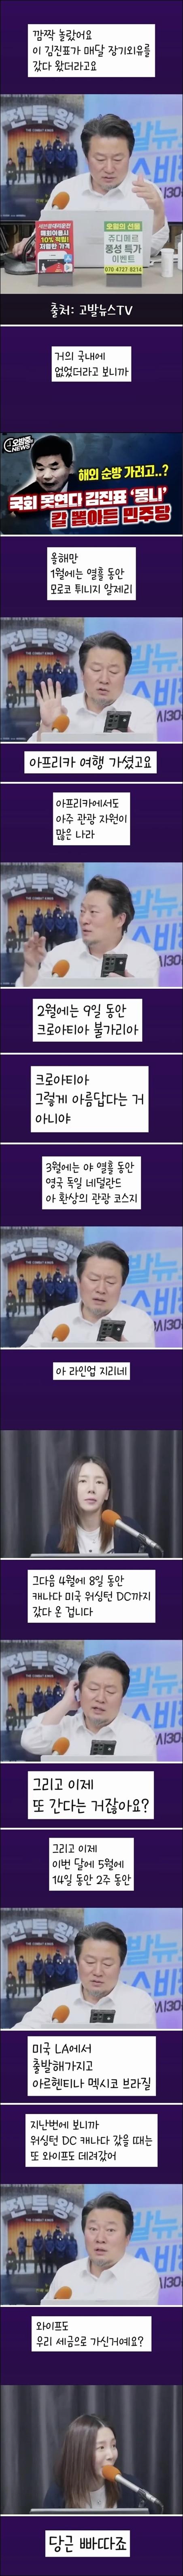 김진표의 슬기로운 국회생활.jpg